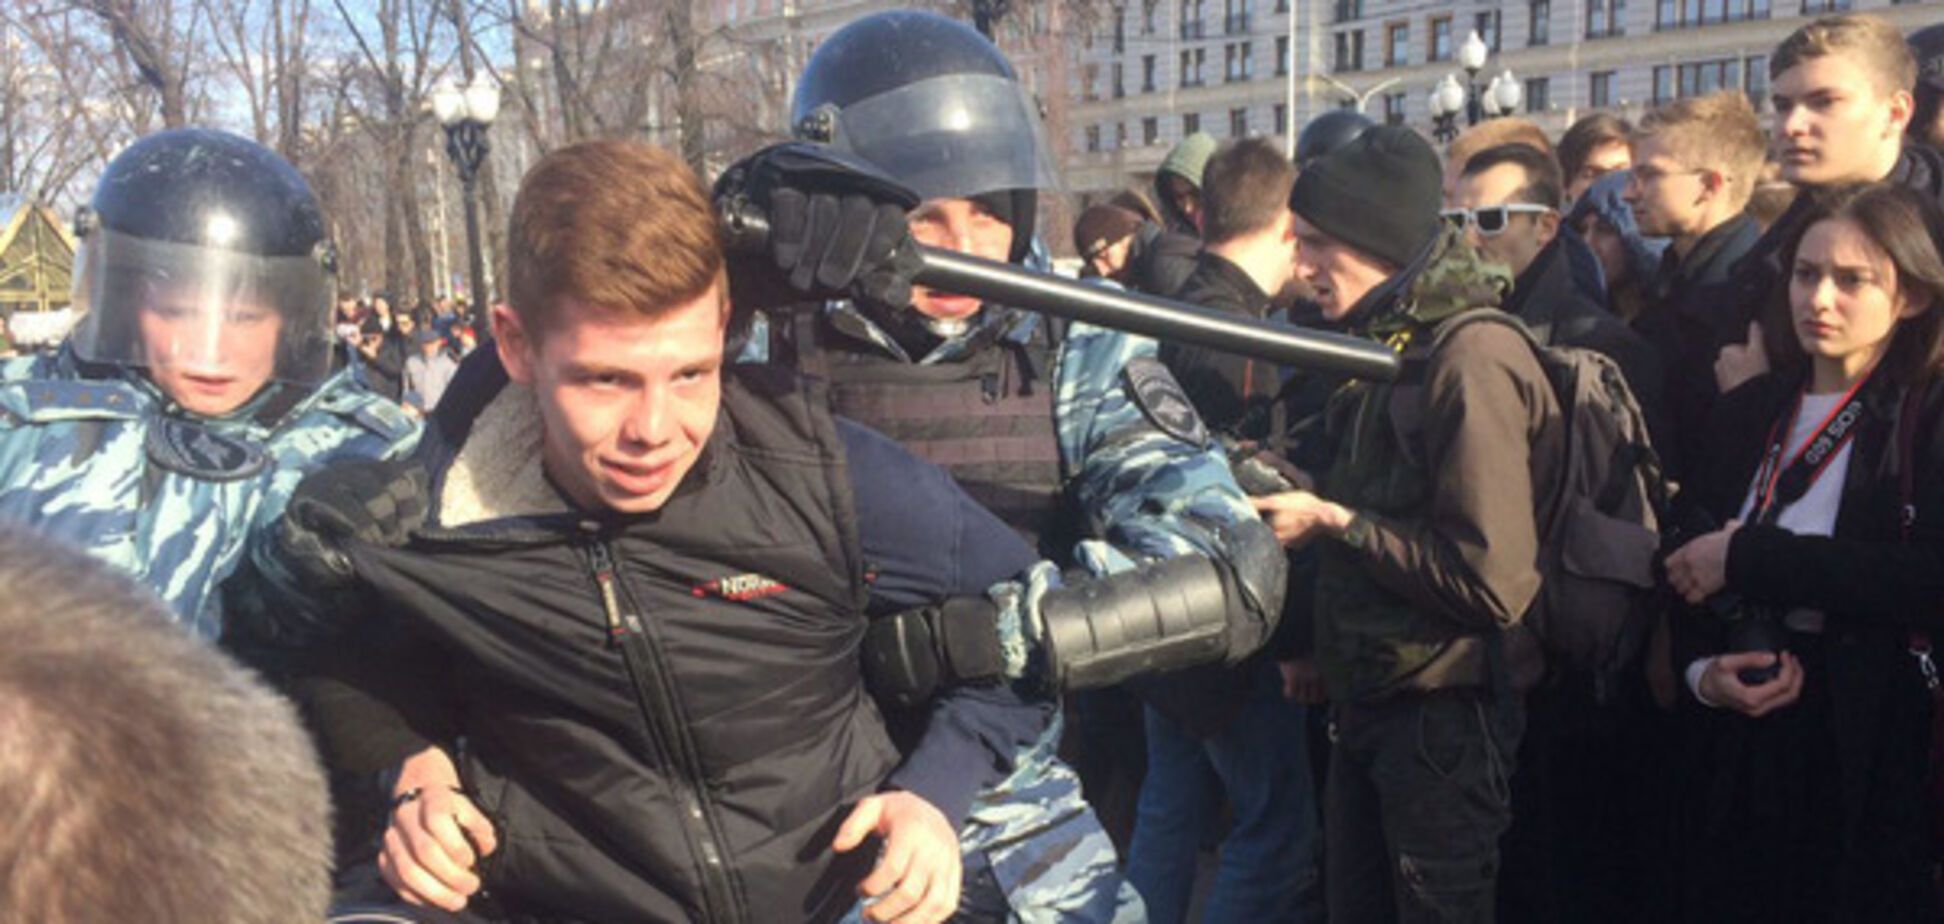 Протест в Москве